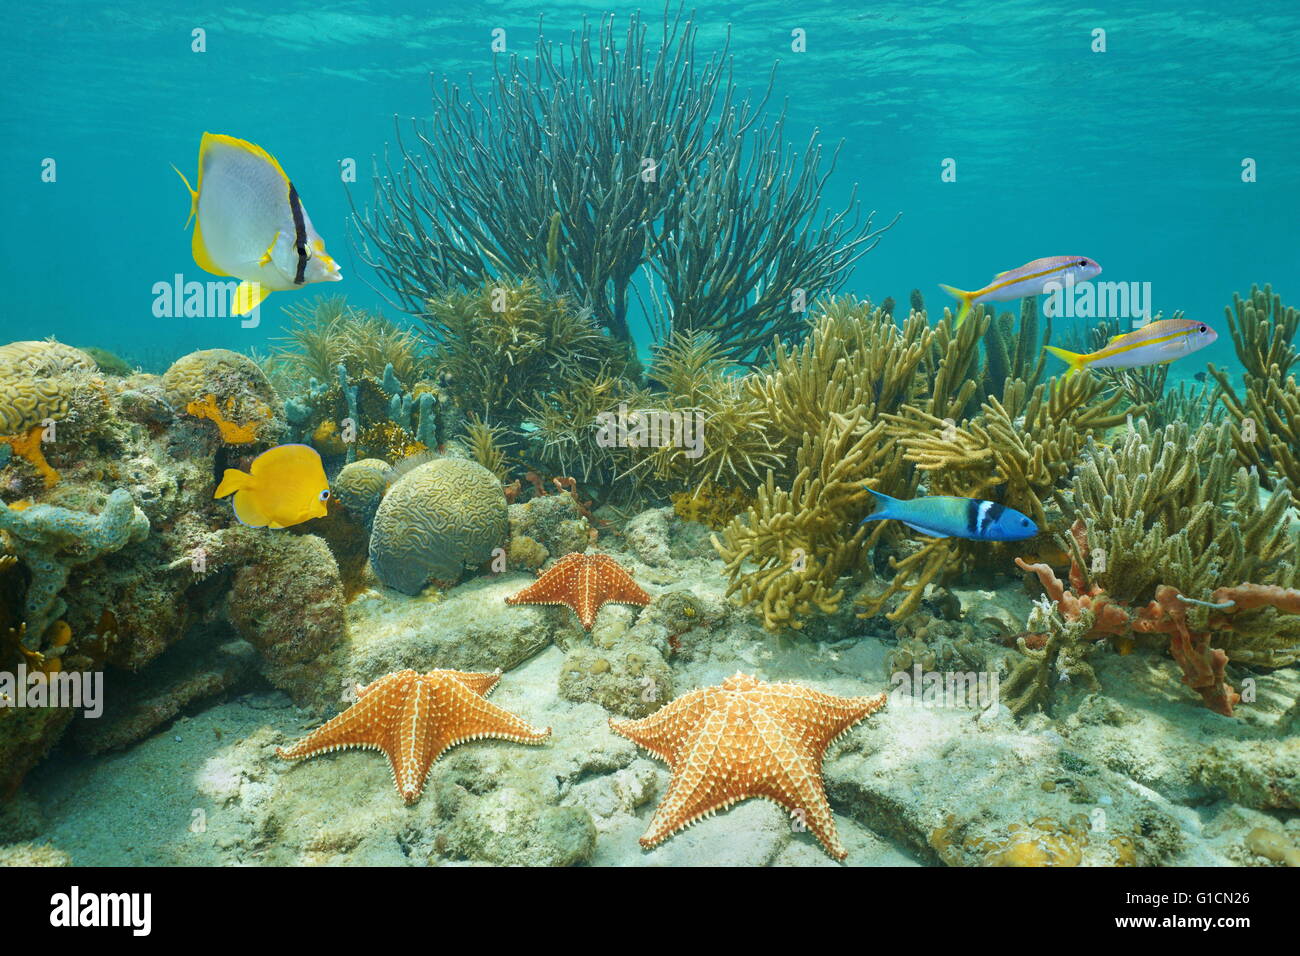 Récif de corail sous-marine avec des étoiles de mer et poissons tropicaux, mer des Caraïbes Banque D'Images